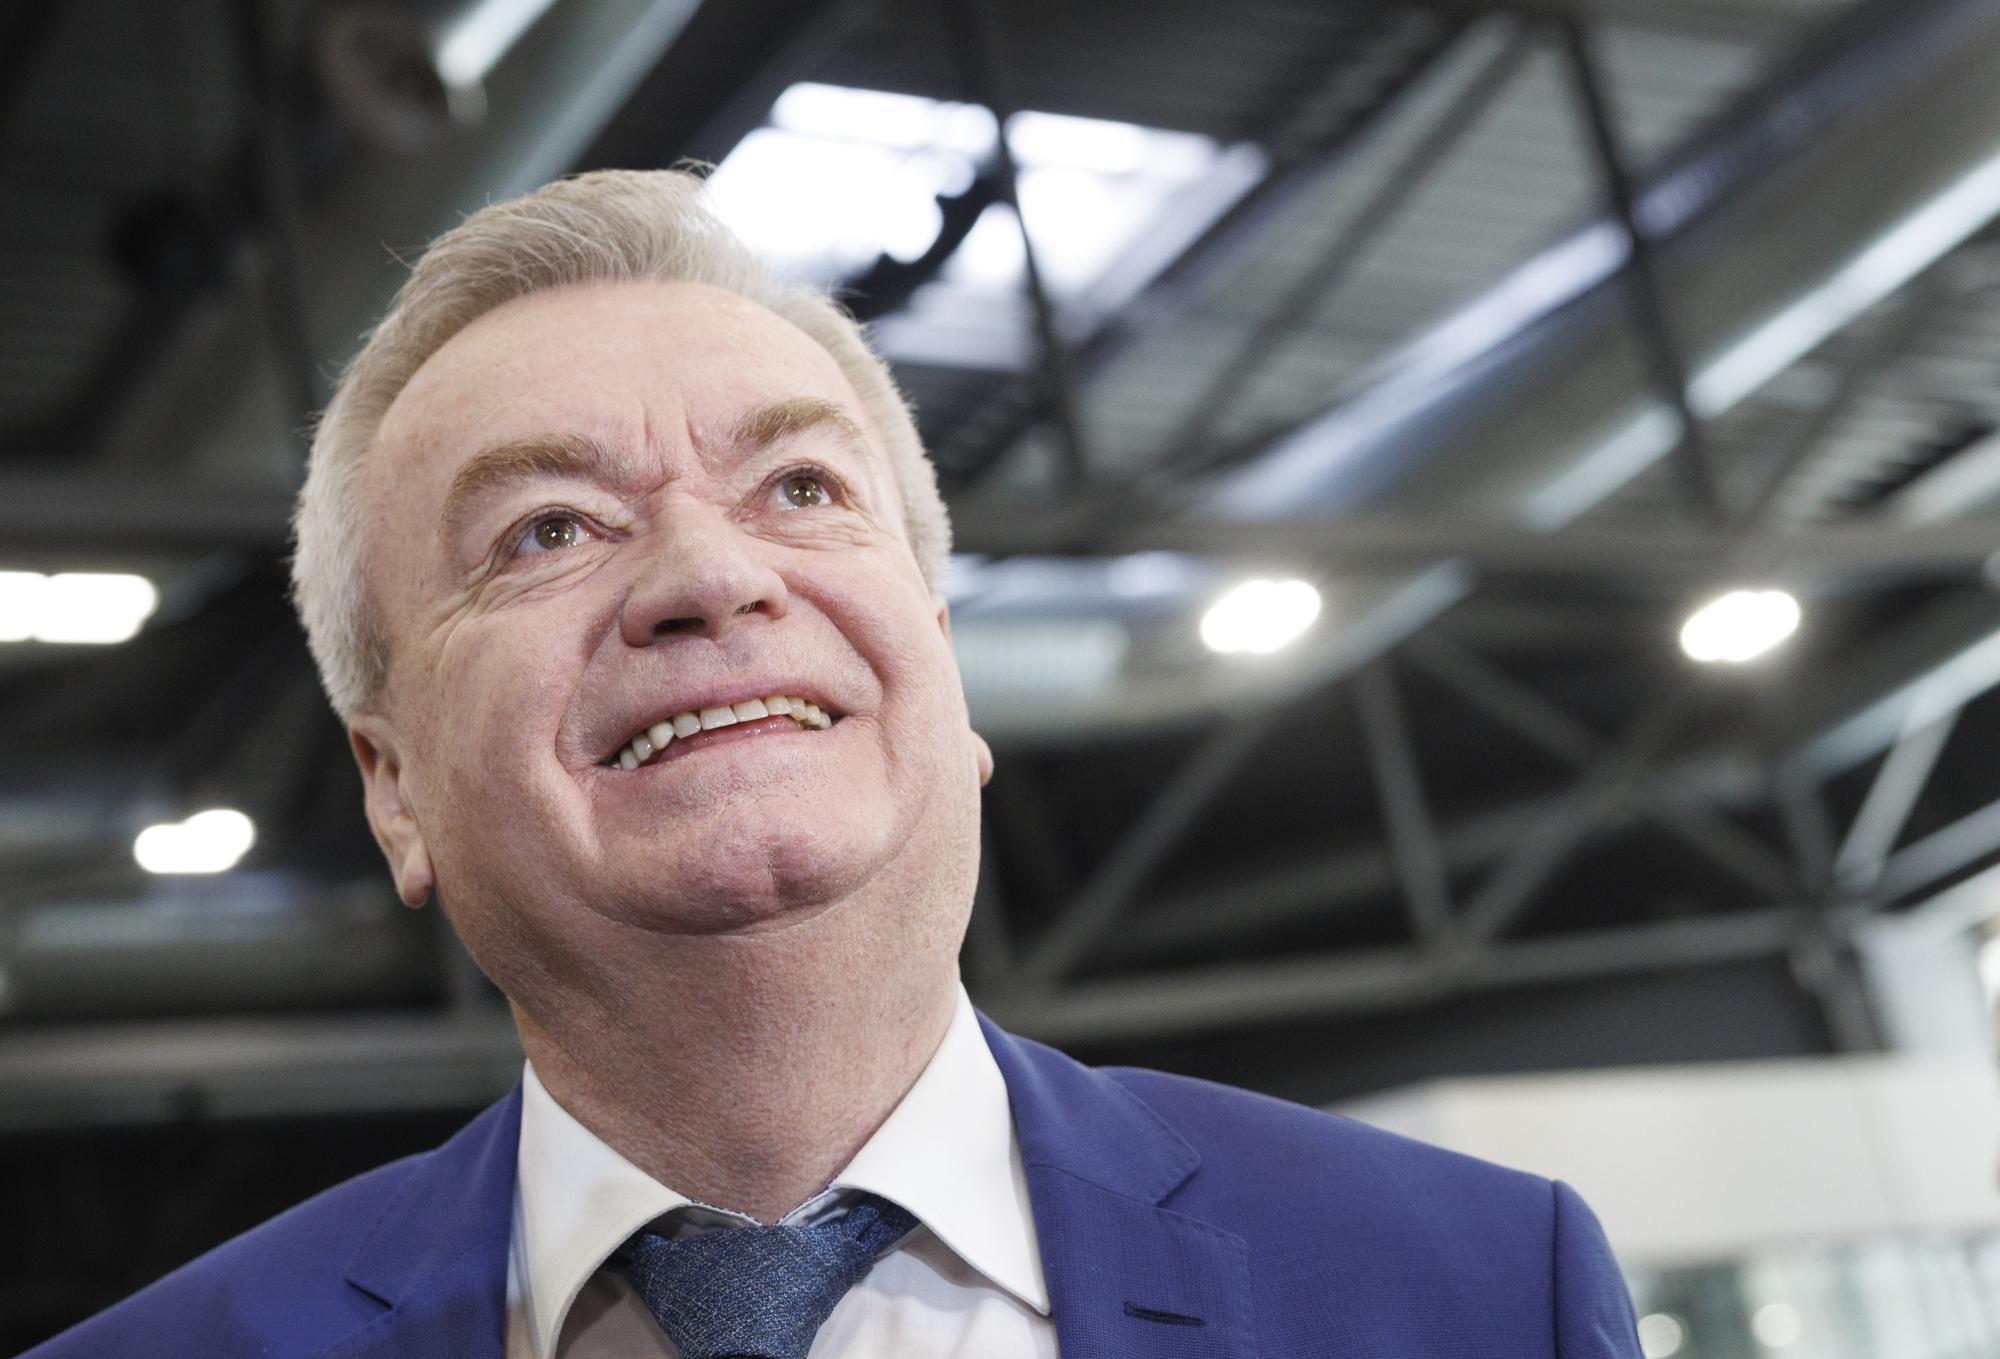 Steirischer SPÖ-Chef Lang bei Direktwahl mit 91,64 Prozent bestätigt